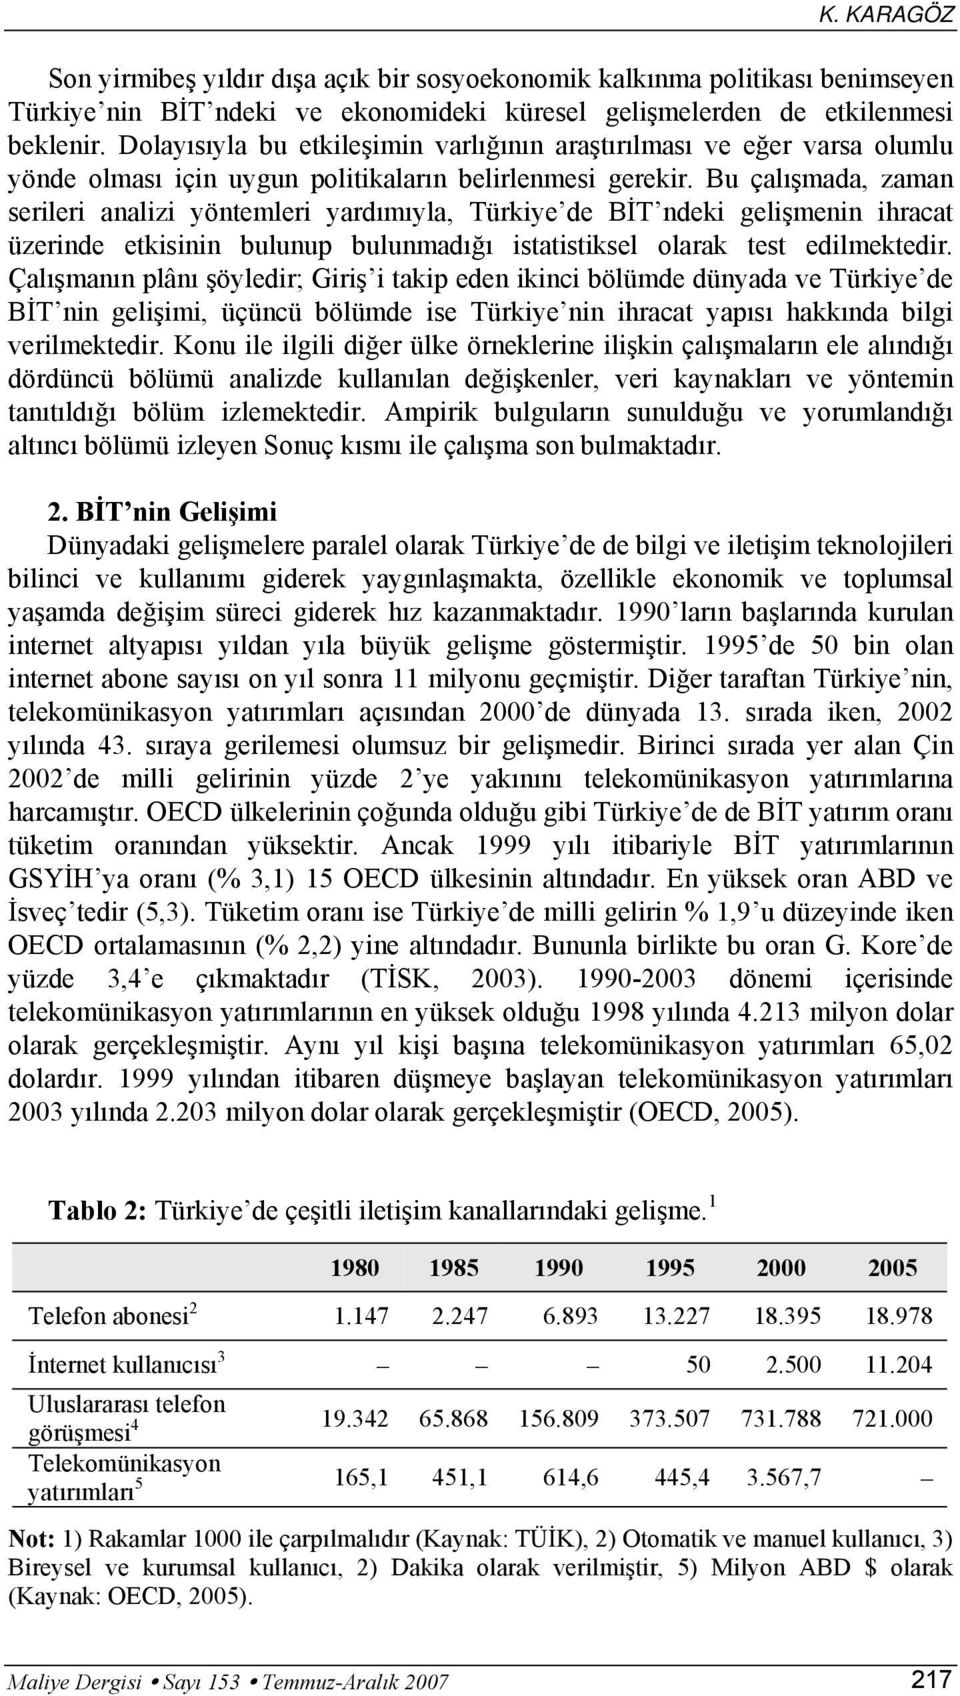 Bu çalışmada, zaman serileri analizi yöntemleri yardımıyla, Türkiye de BİT ndeki gelişmenin ihracat üzerinde etkisinin bulunup bulunmadığı istatistiksel olarak test edilmektedir.